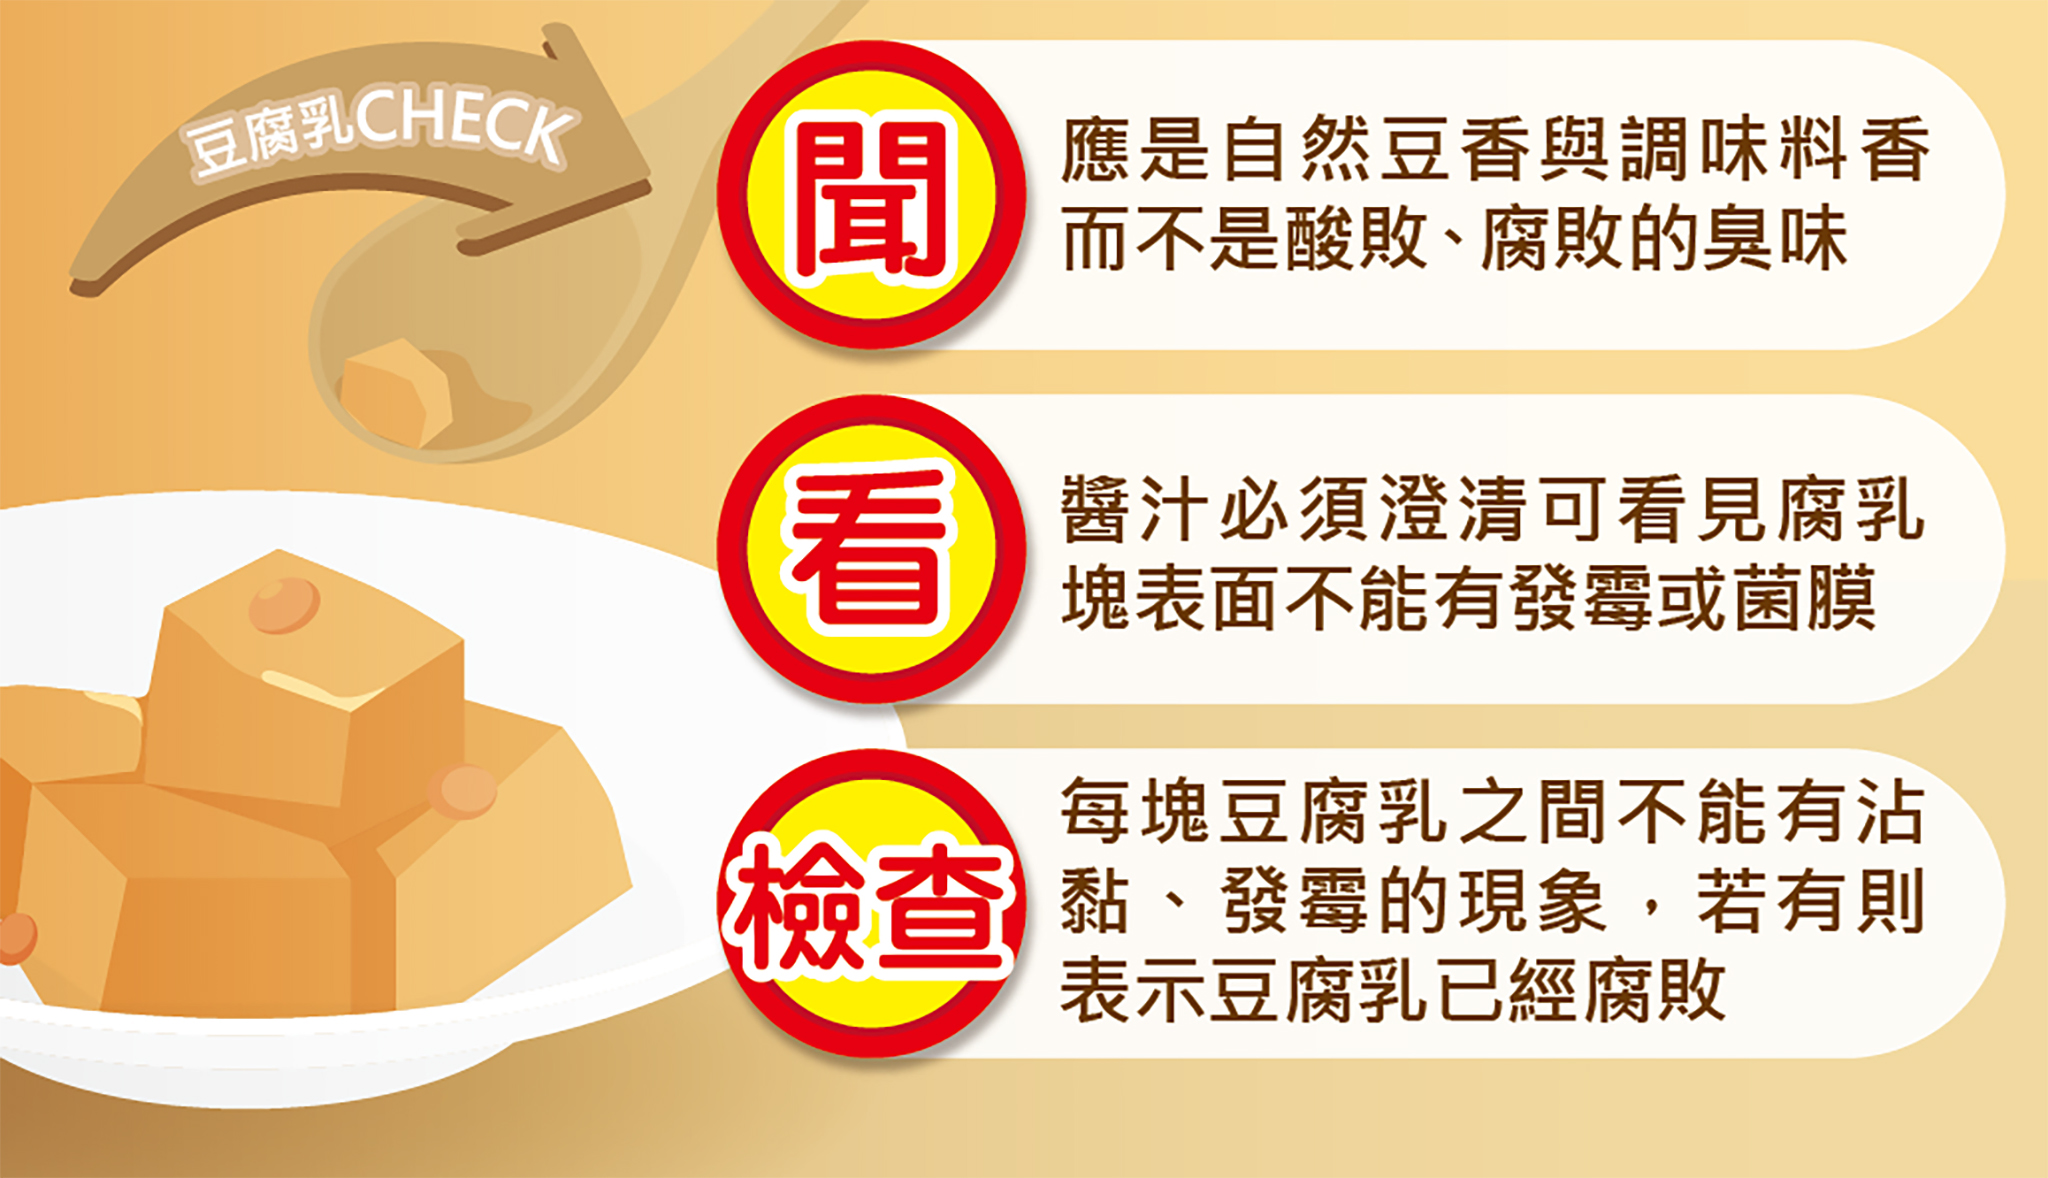 選購豆腐乳要掌握「1聞2看3檢查」的原則。